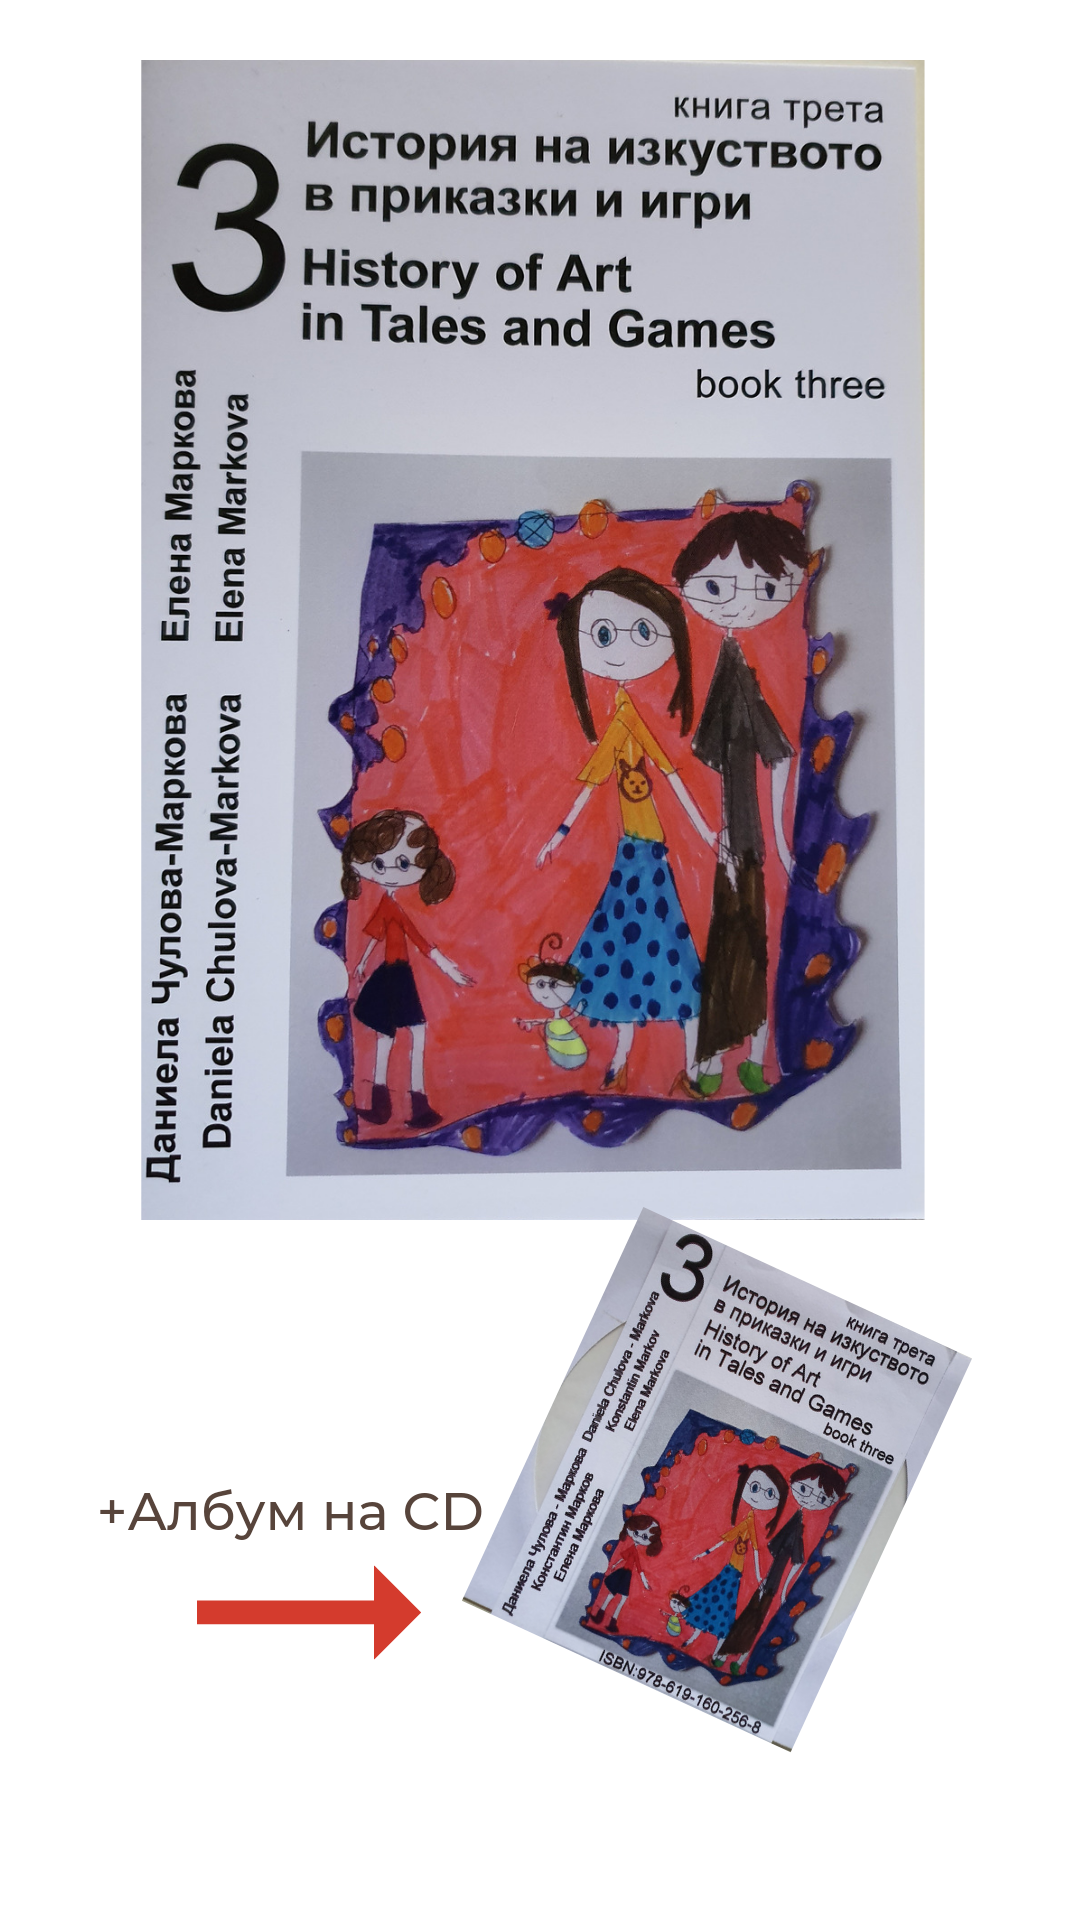 Книга със заглавие История на изкуството в приказки и игри, част3, придружена от албум на електронен носител. На корицата е изобразен семеен ортрет - детска рисунка. 